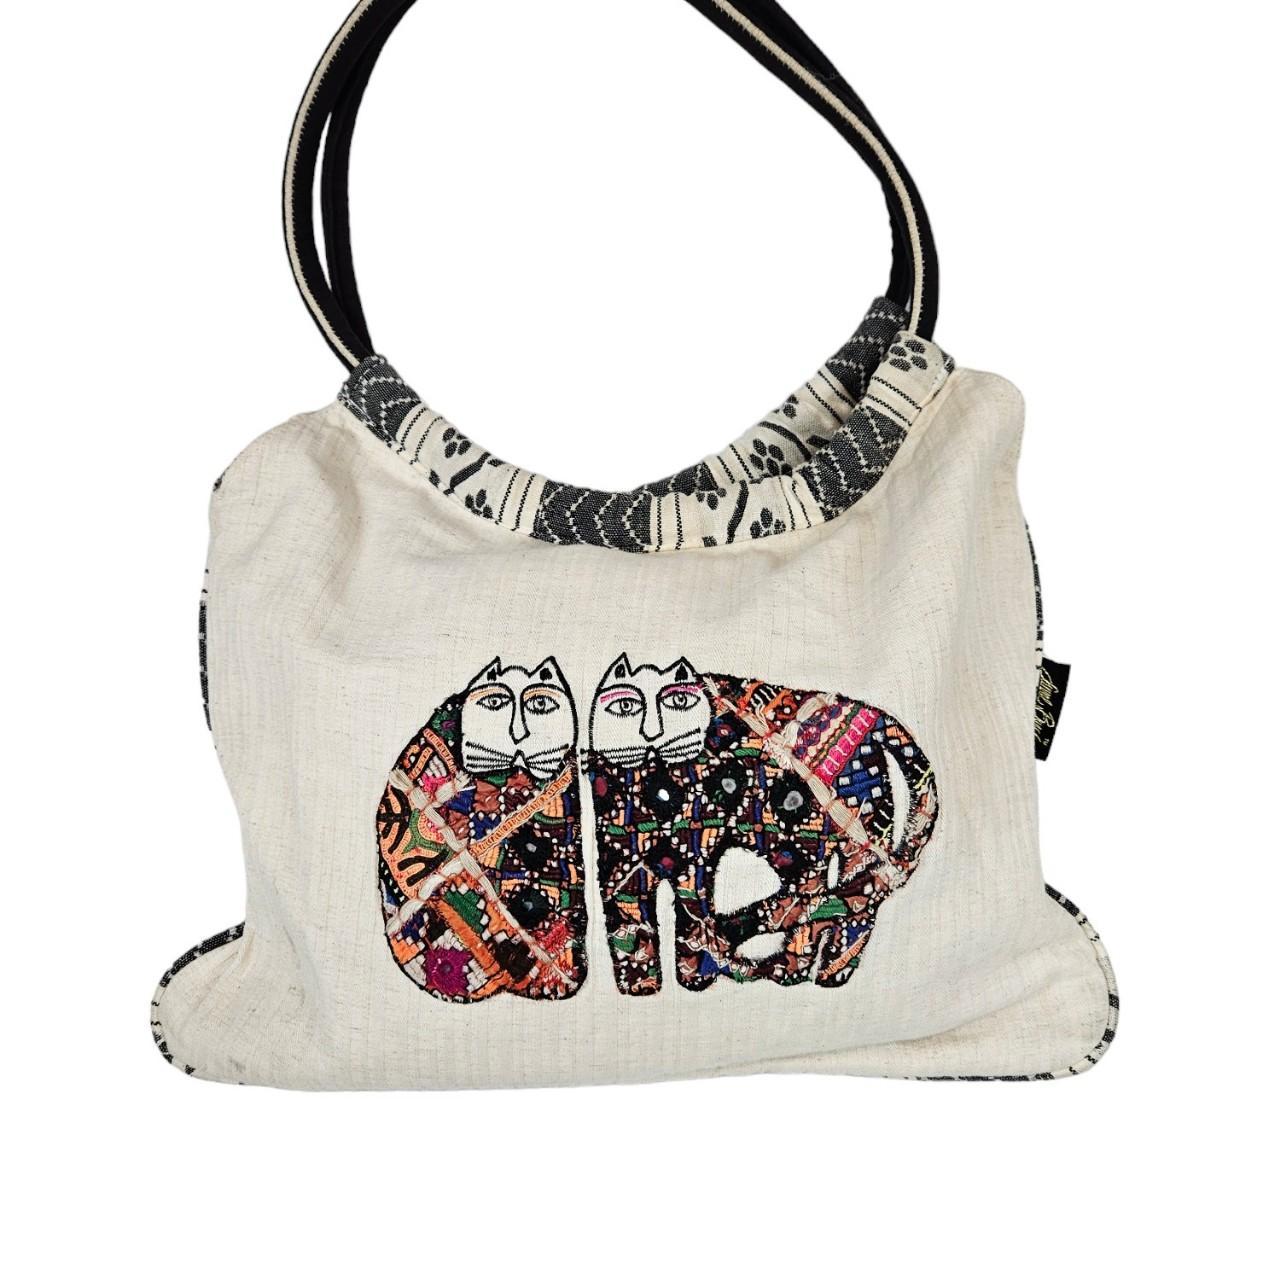 Laurel Burch Handbags & Minis